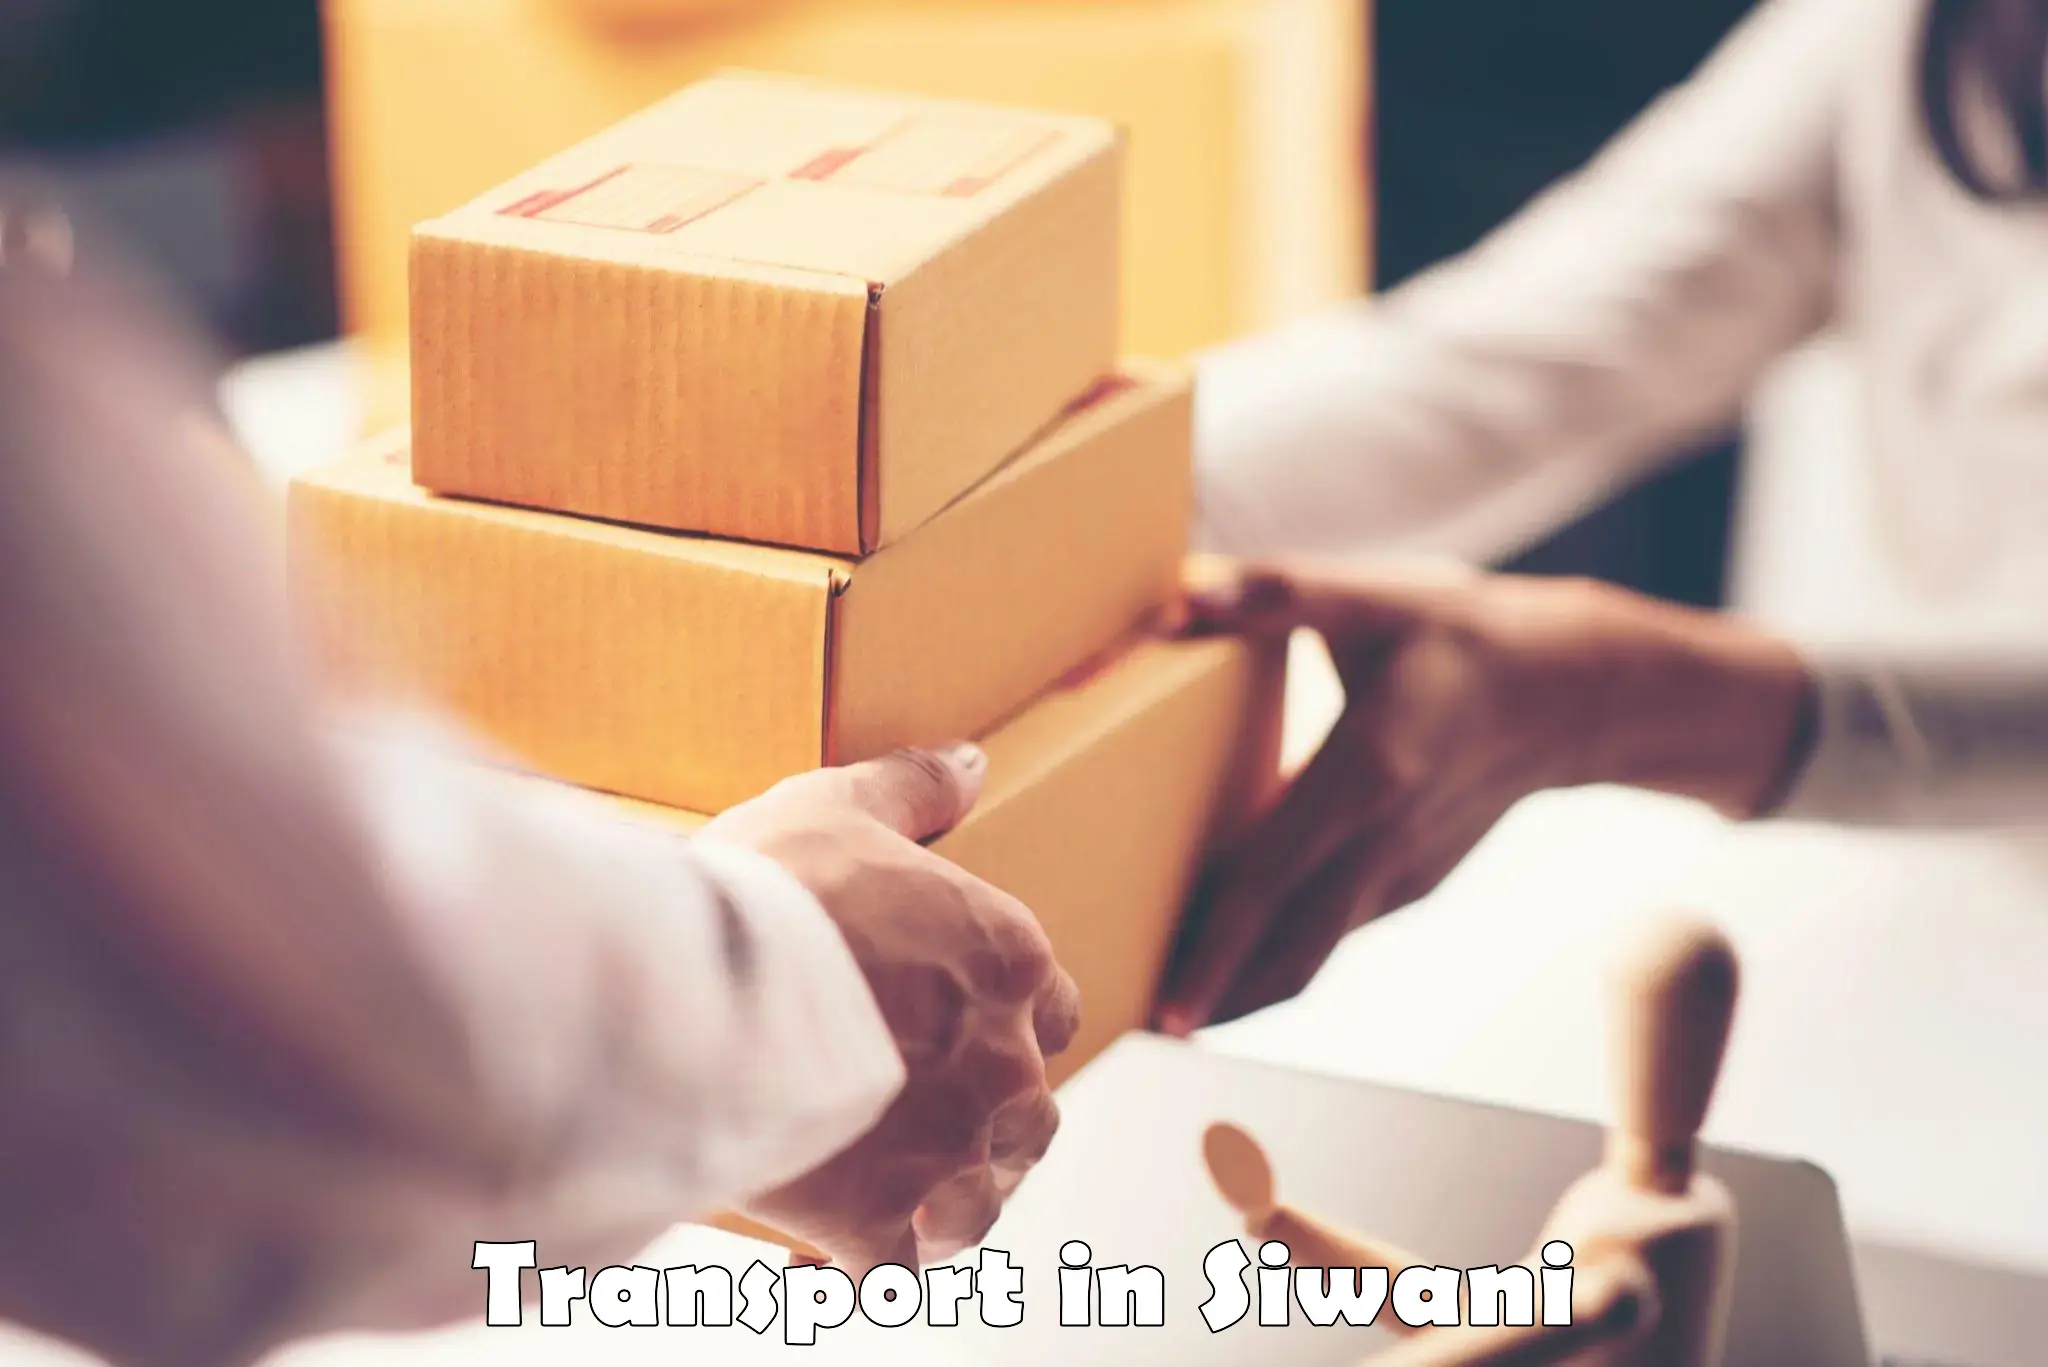 Online transport in Siwani